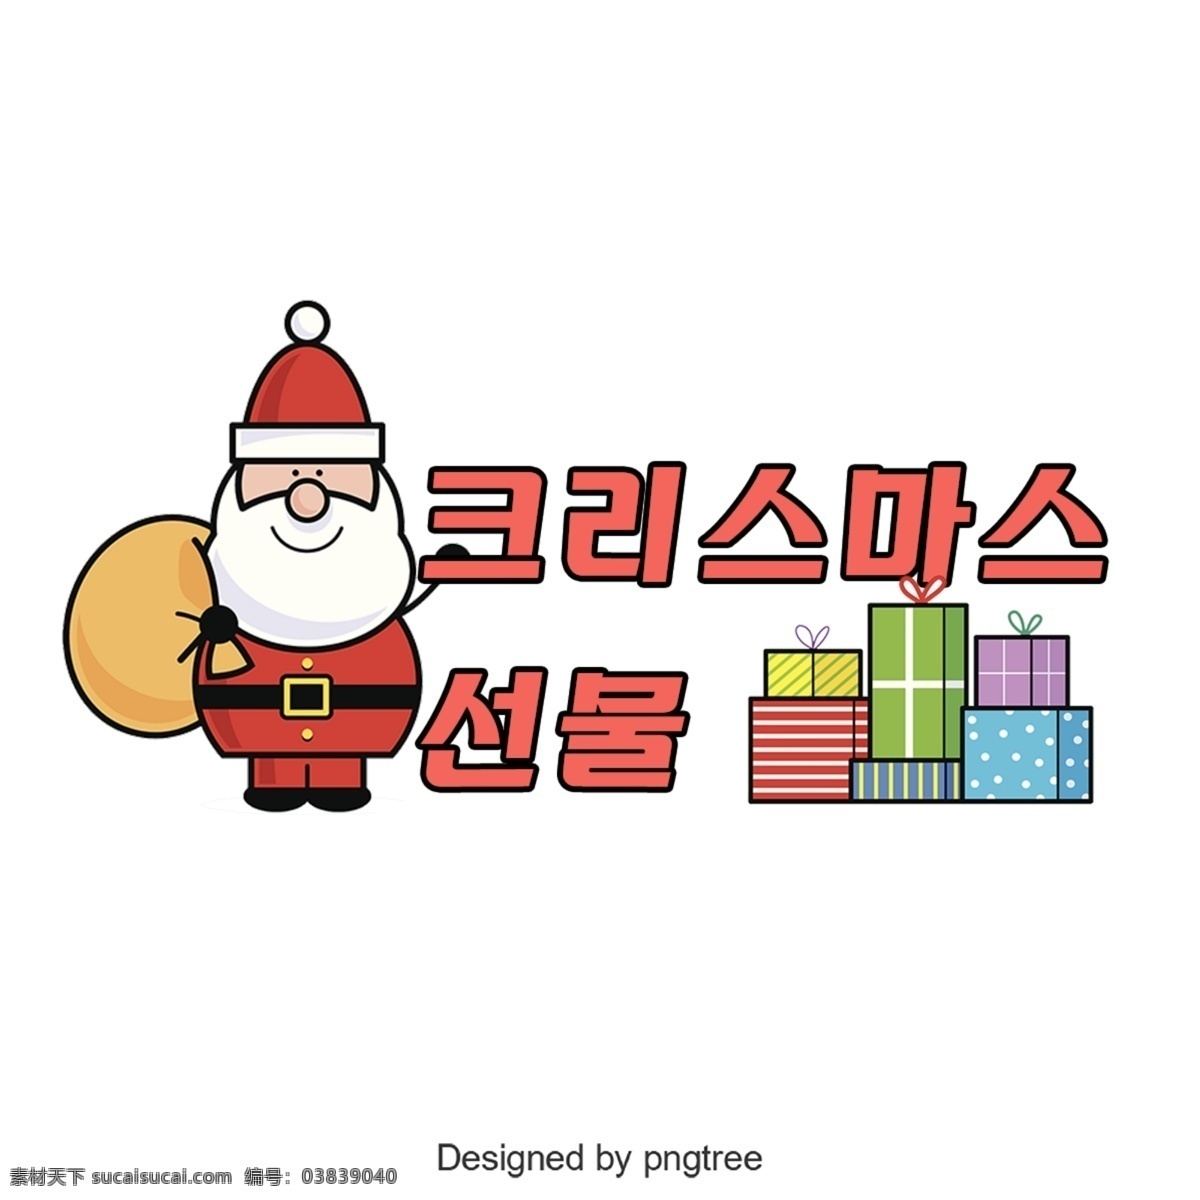 圣诞 礼物 韩国 字体 谢和 可爱 字形 韩文 礼品 圣诞节